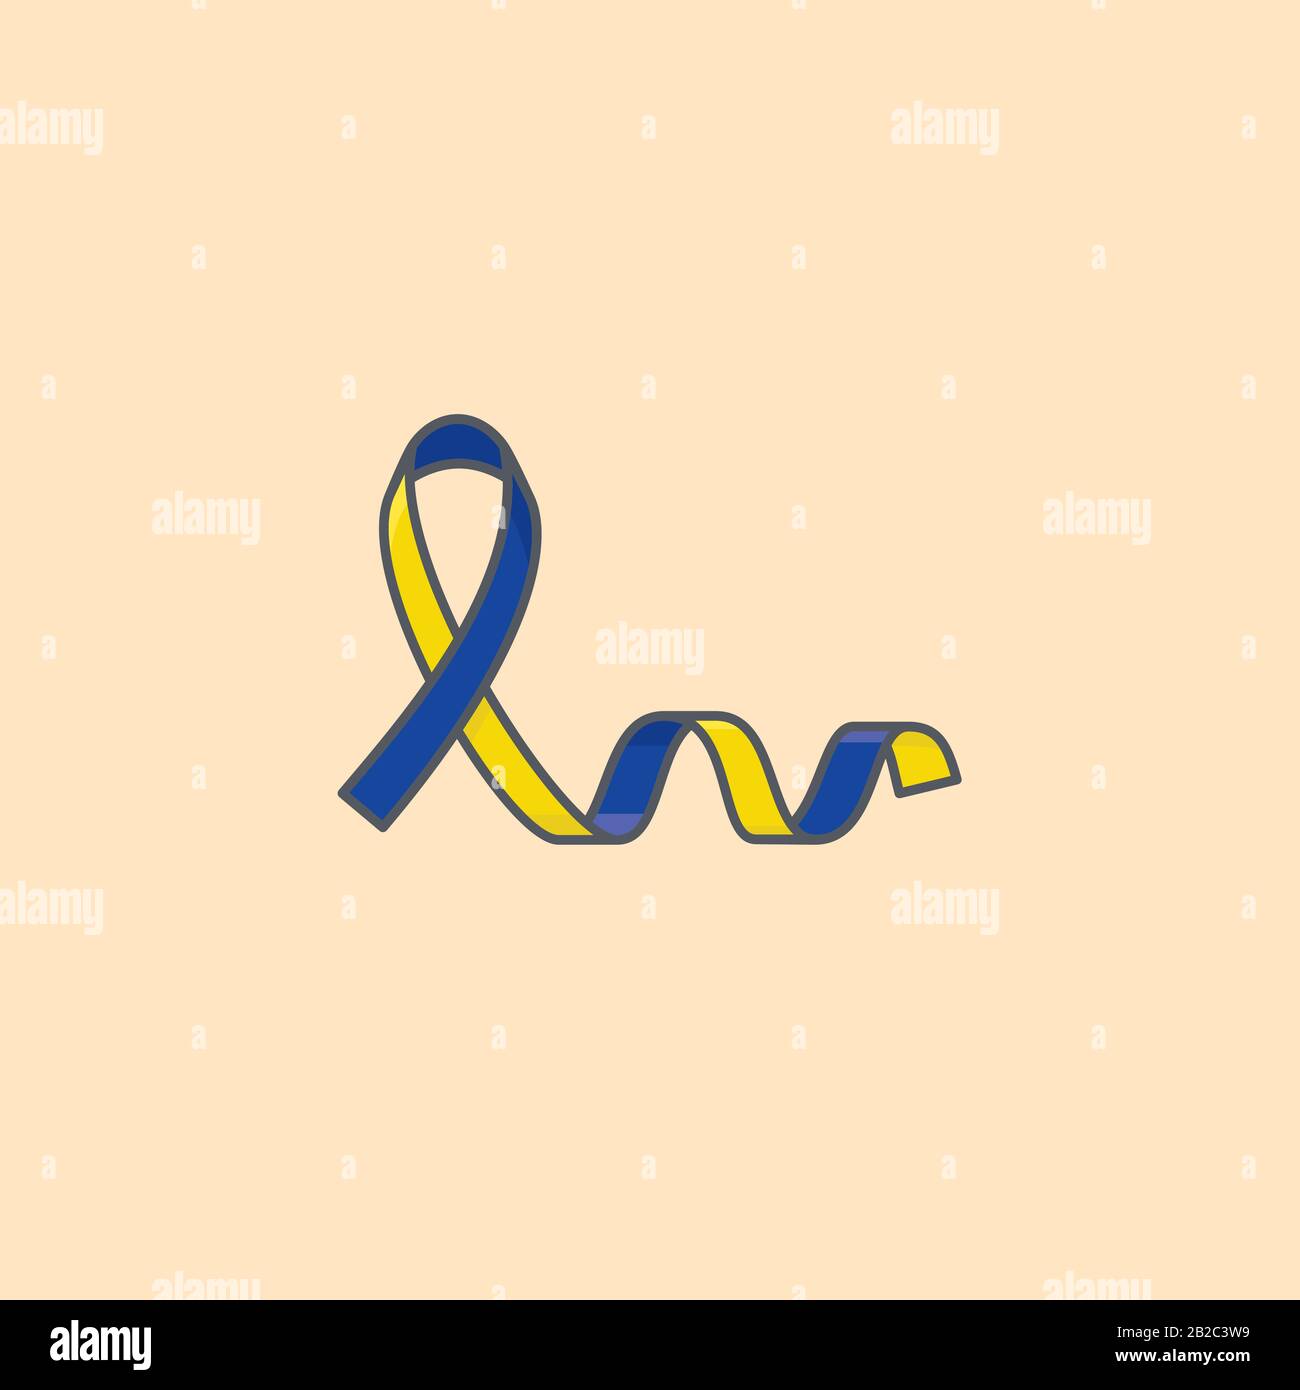 Illustrazione del vettore del nastro blu e giallo per il giorno Della sindrome Di Down il marzo 21st. Simbolo di consapevolezza del disturbo genetico. Illustrazione Vettoriale